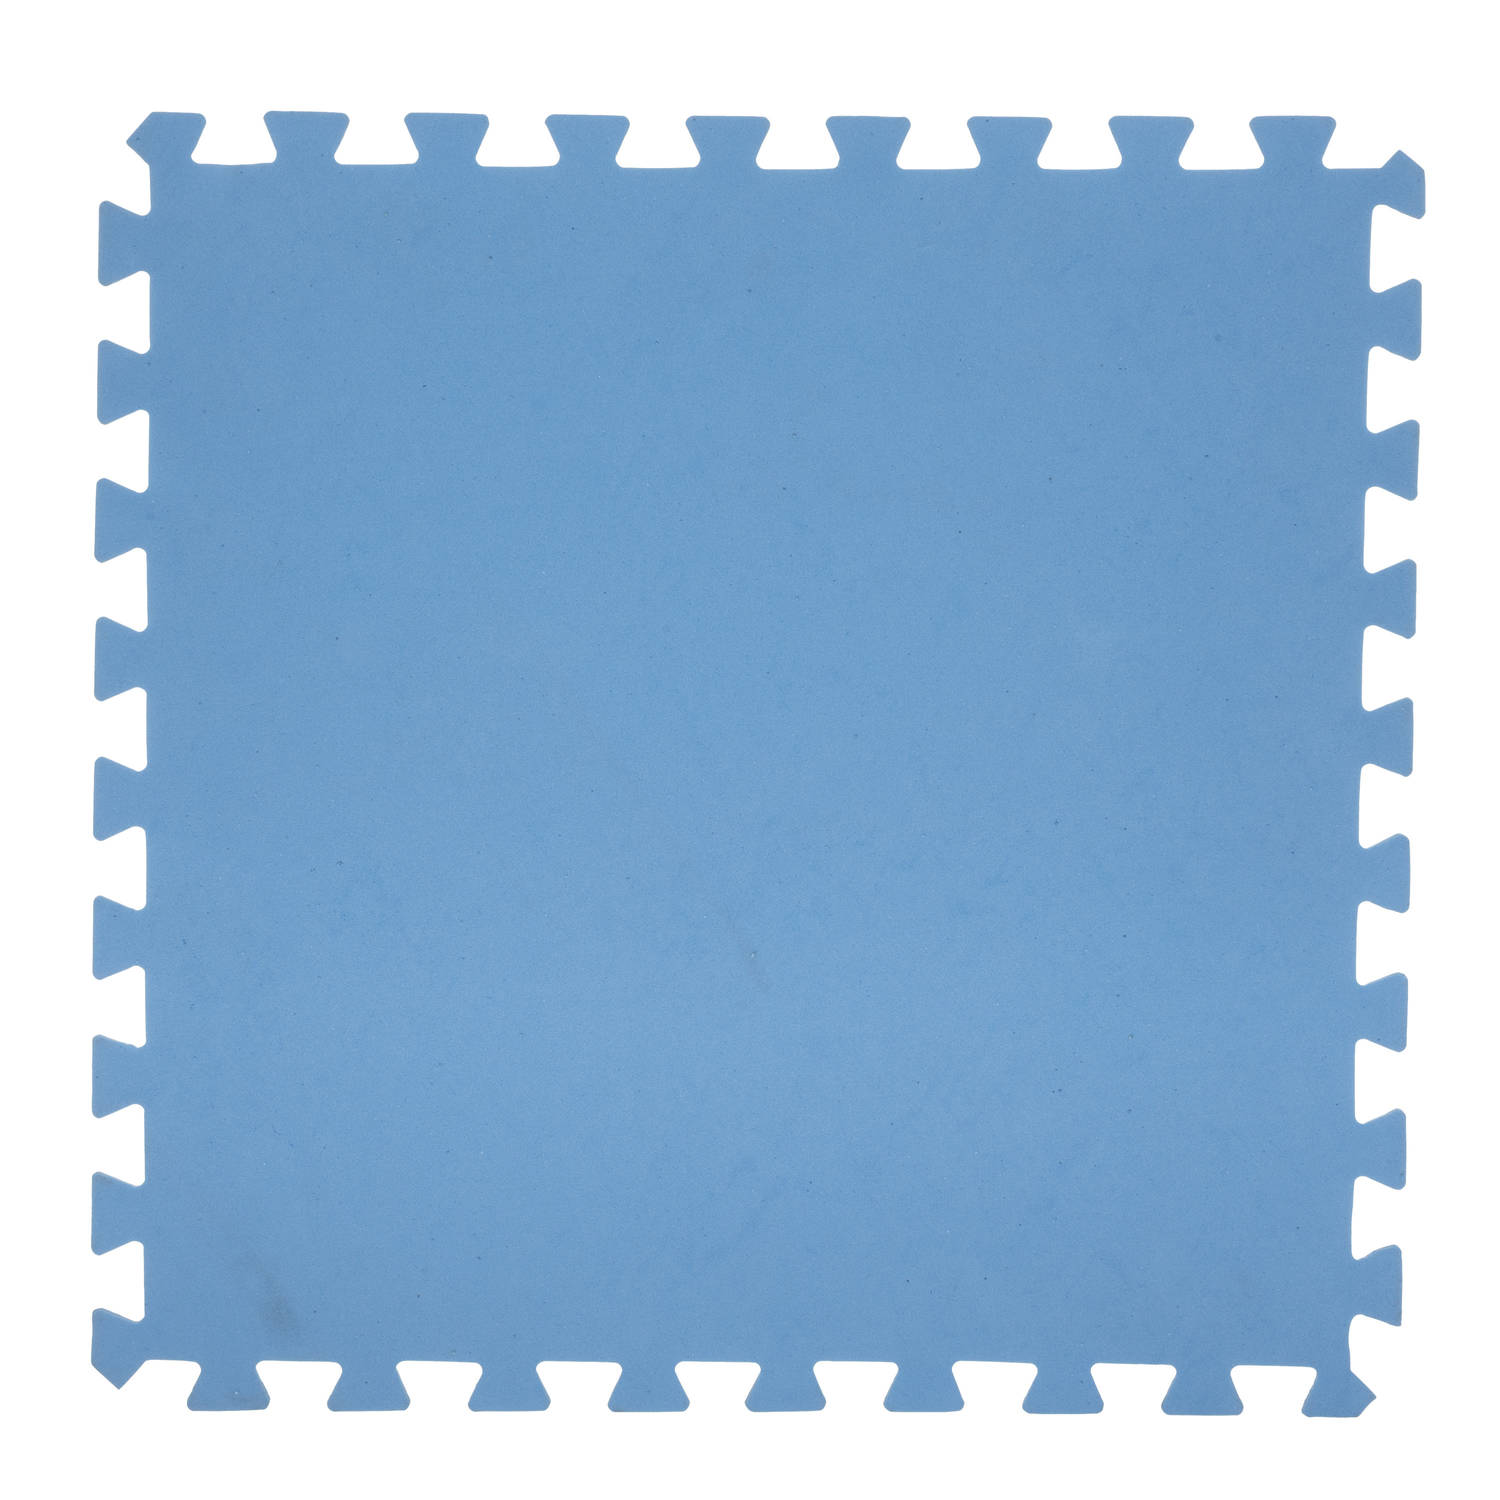 8x stuks Foam puzzelmat zwembadtegels/fitnesstegels blauw 50 x 50 cm - Speelkleden